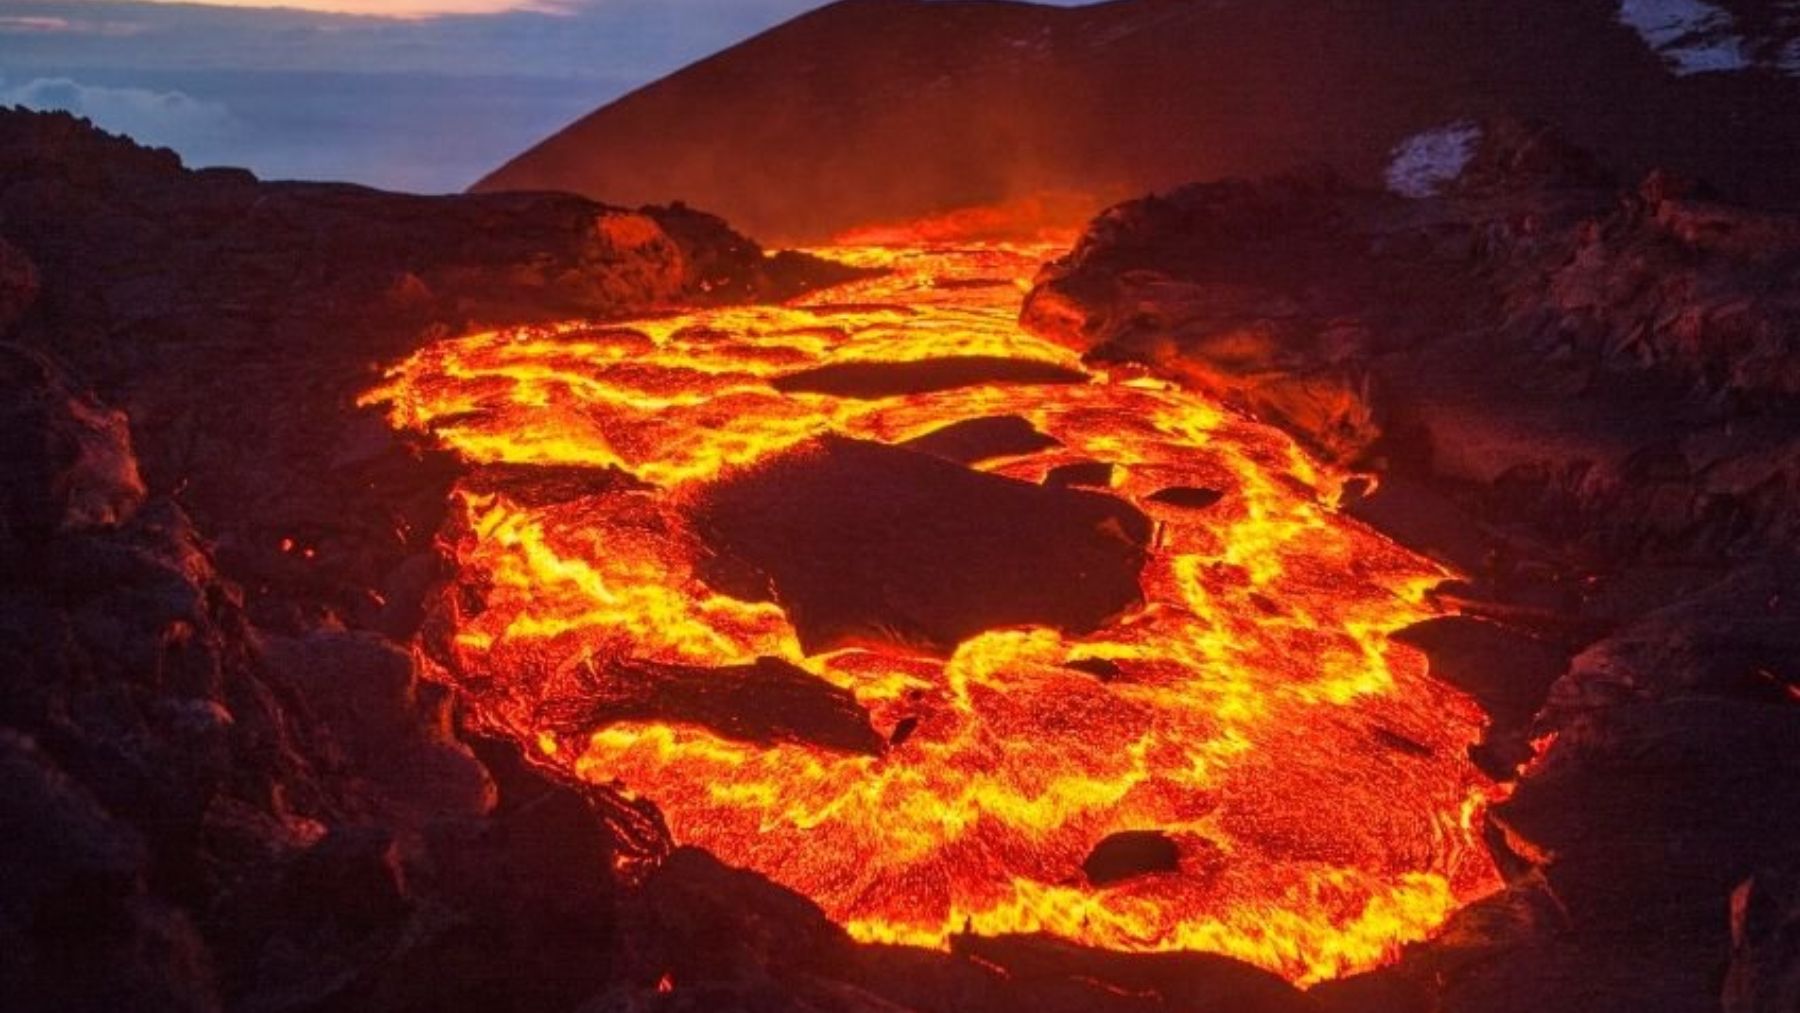 https://okdiario.com/img/2021/09/20/cual-es-la-diferencia-entre-el-magma-y-la-lava.jpg